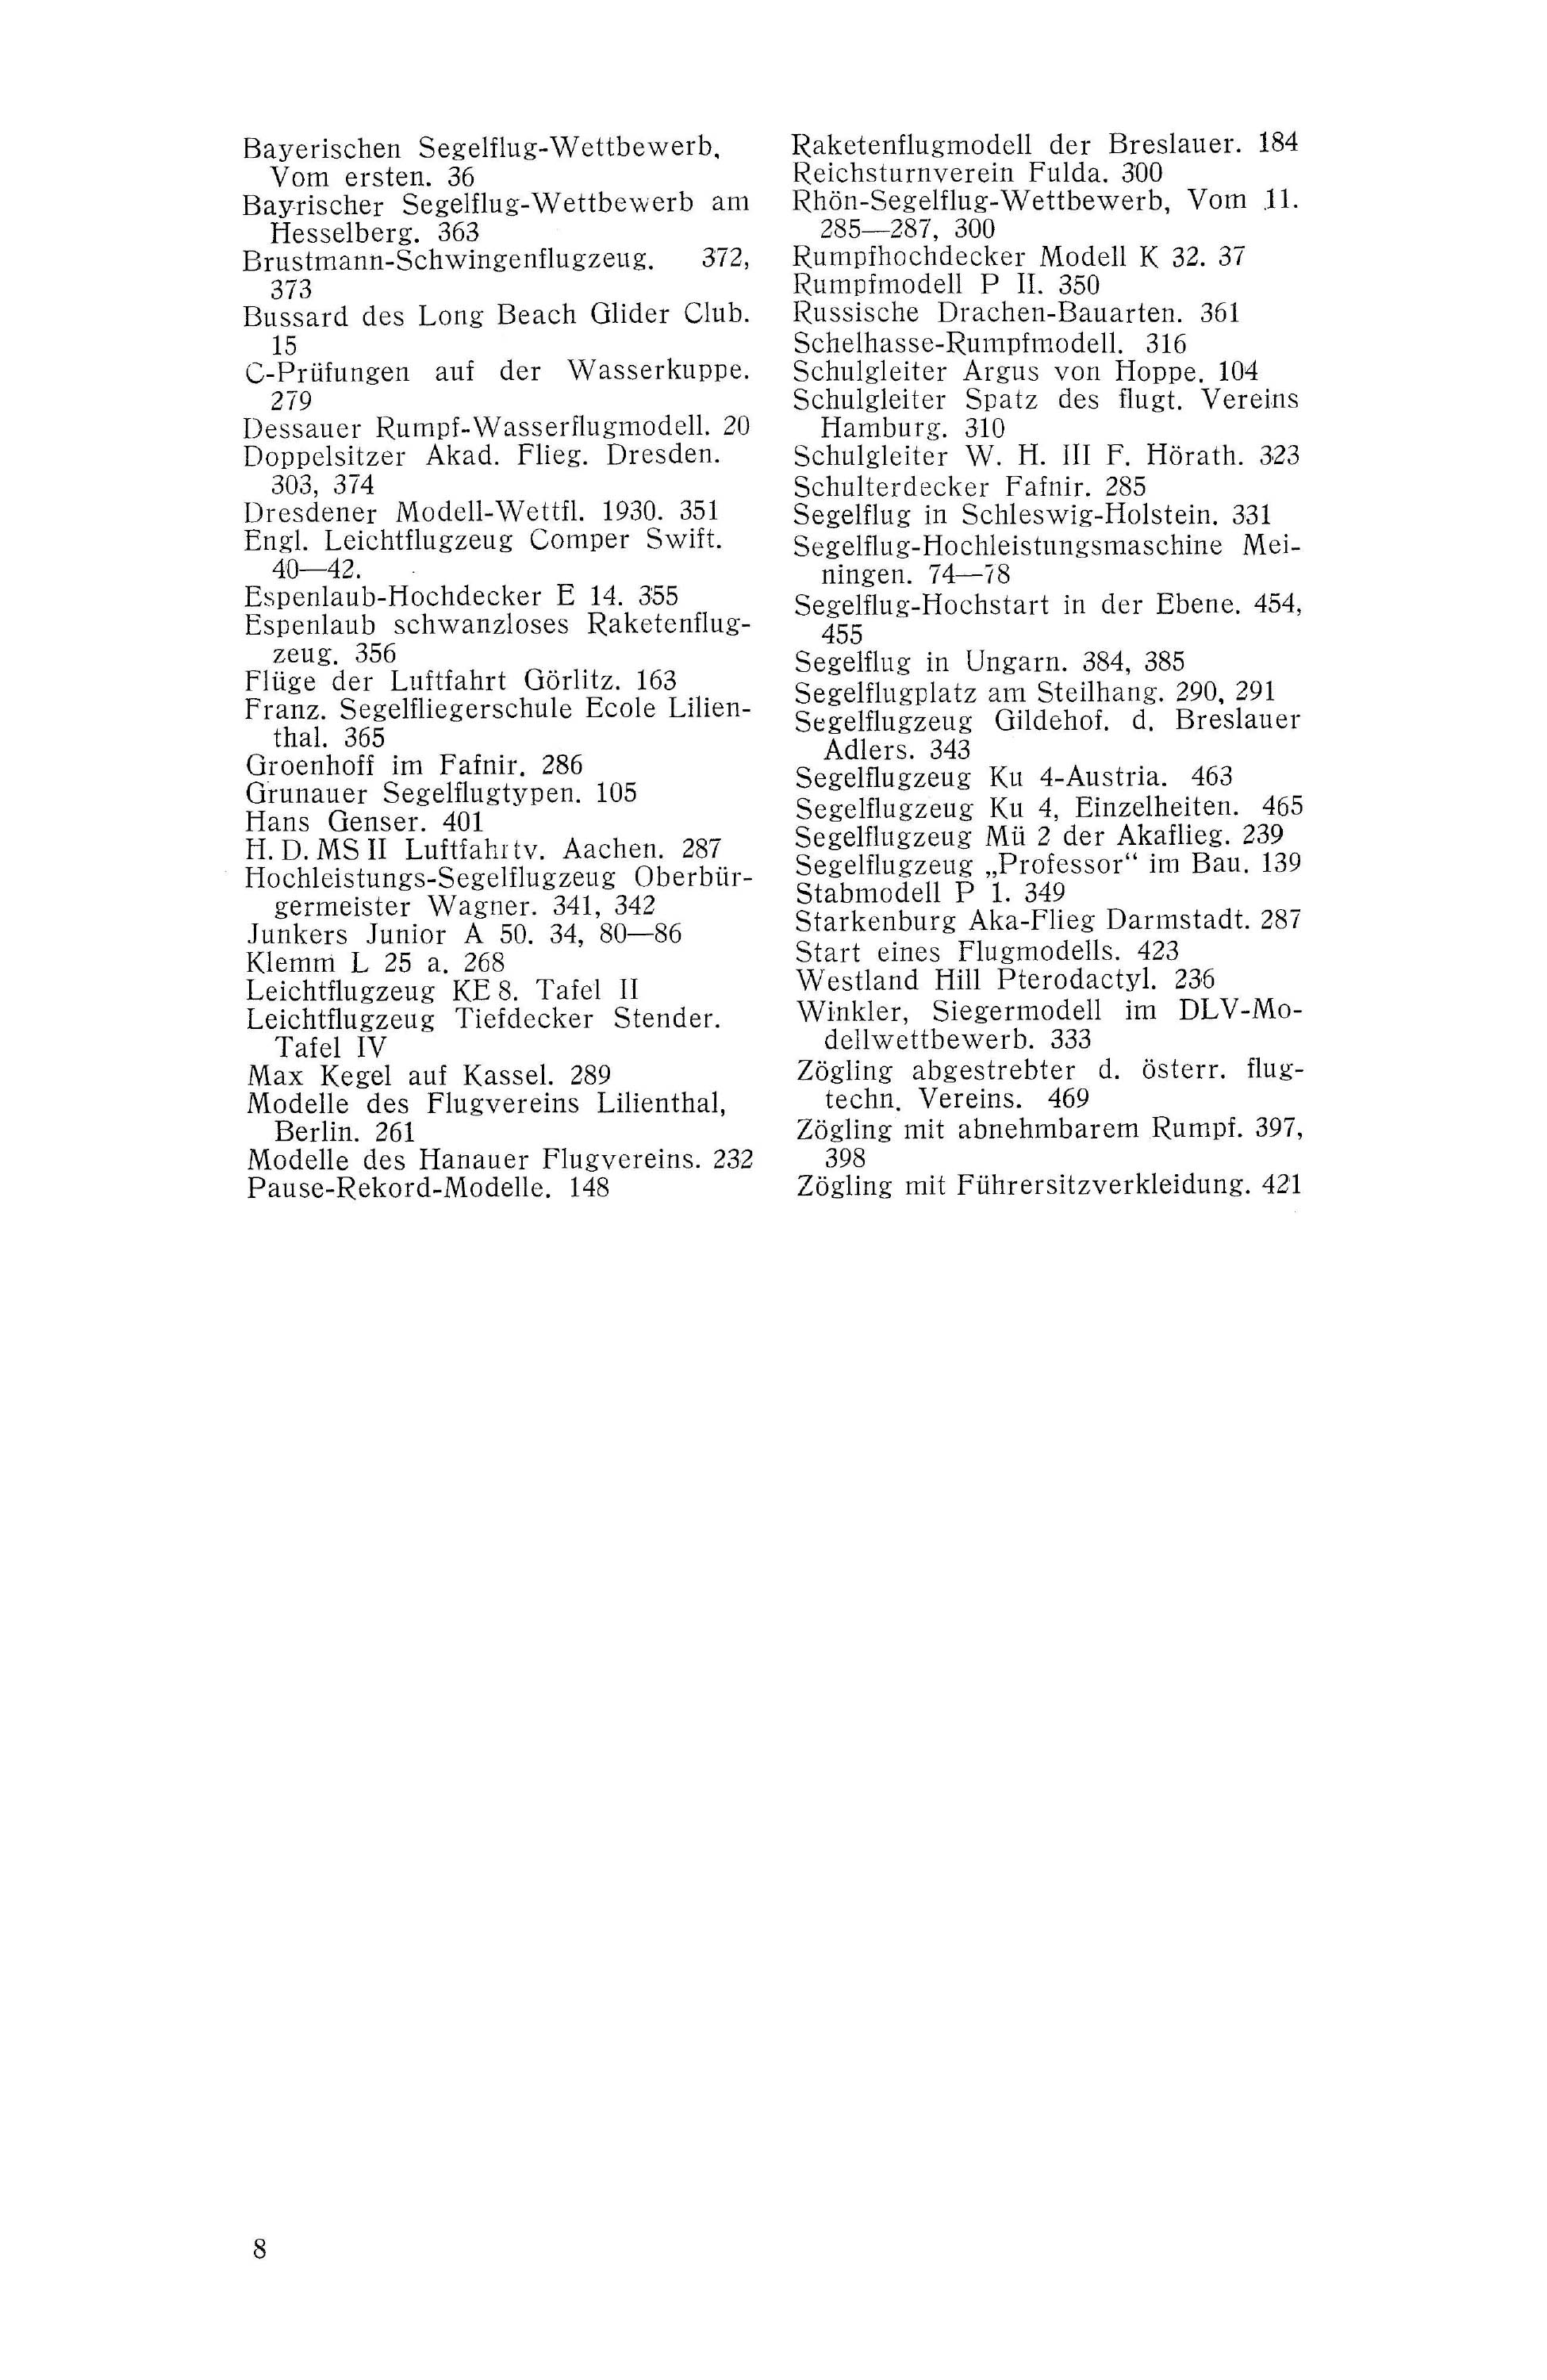 Sachregister und Inhaltsverzeichnis der Zeitschrift Flugsport 1930